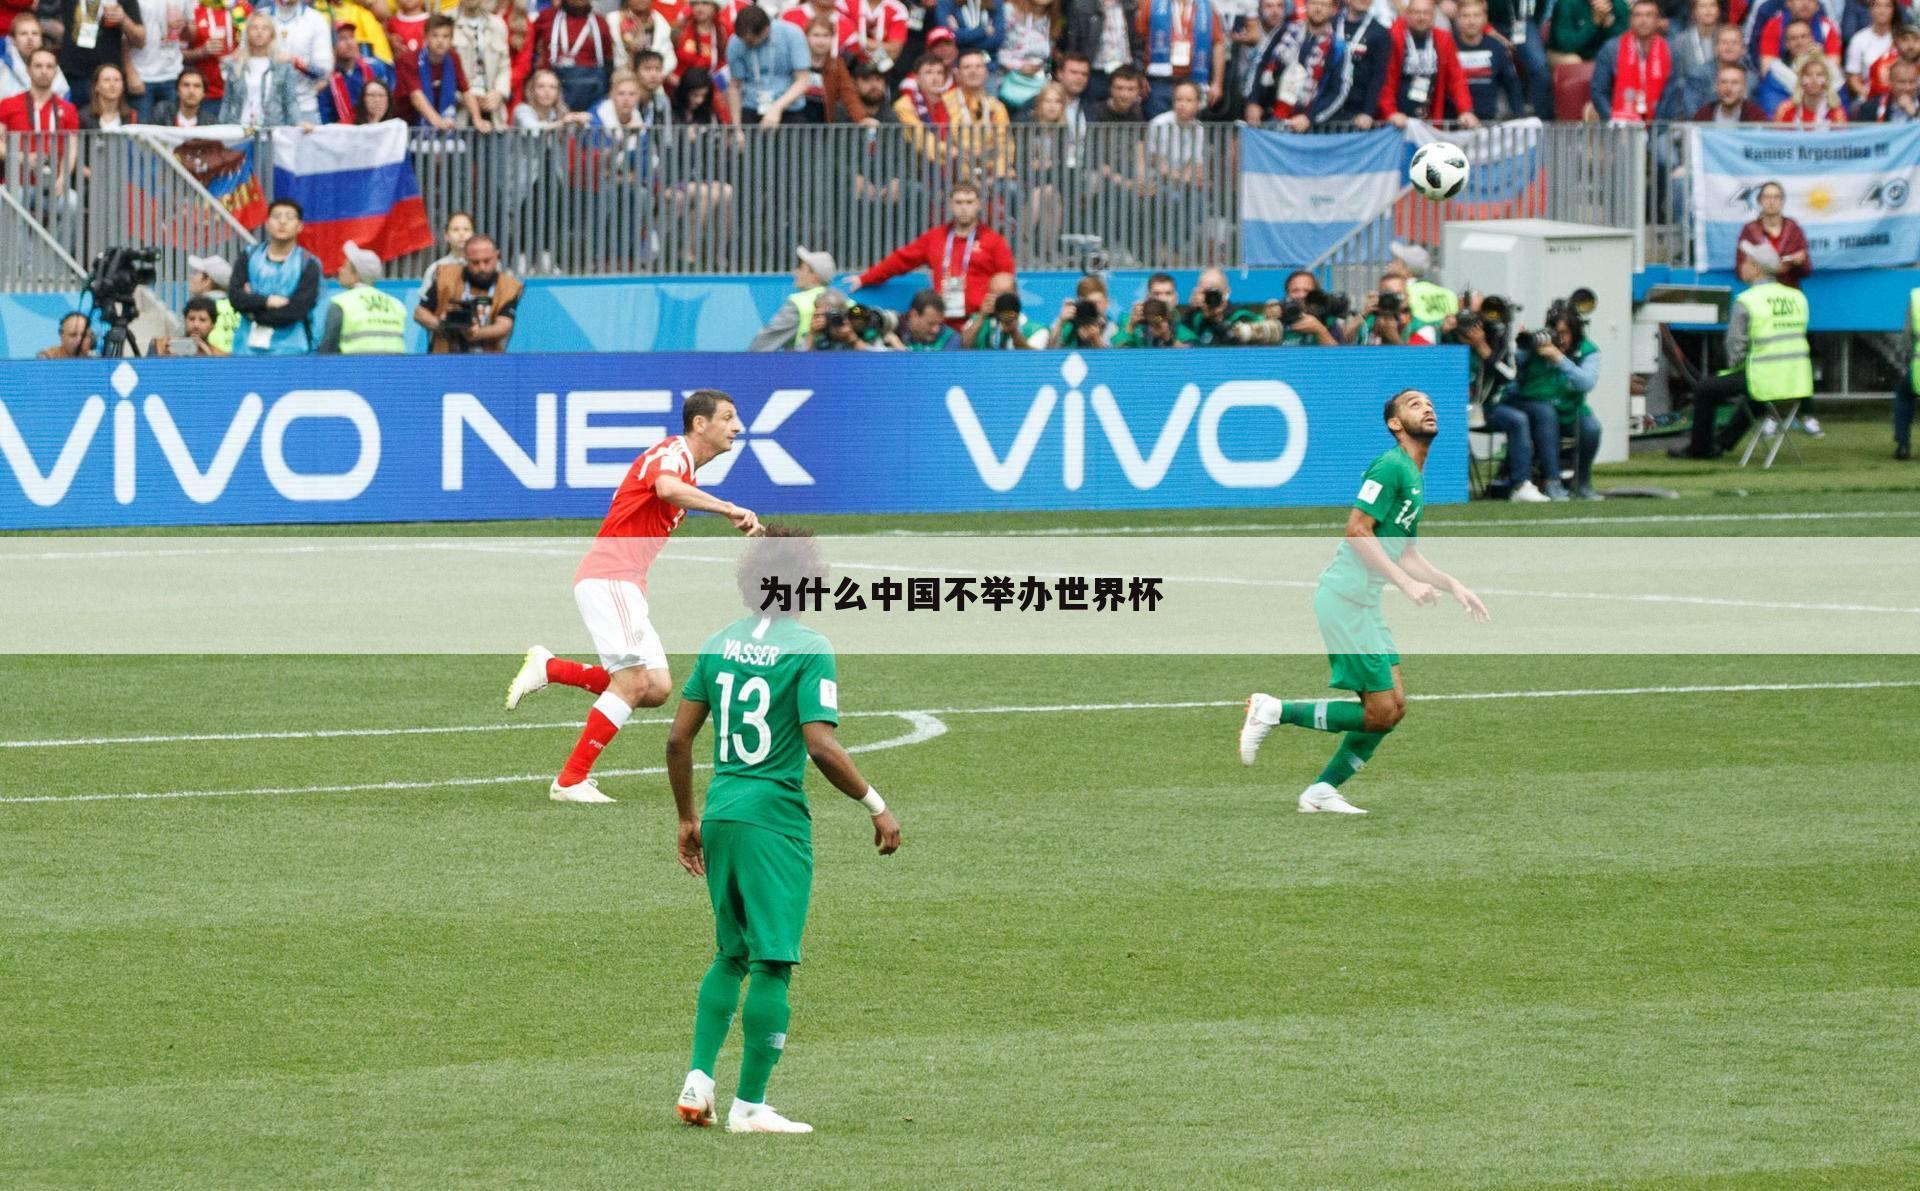 <b>〈申办世界杯〉中国放弃申办世界杯</b>